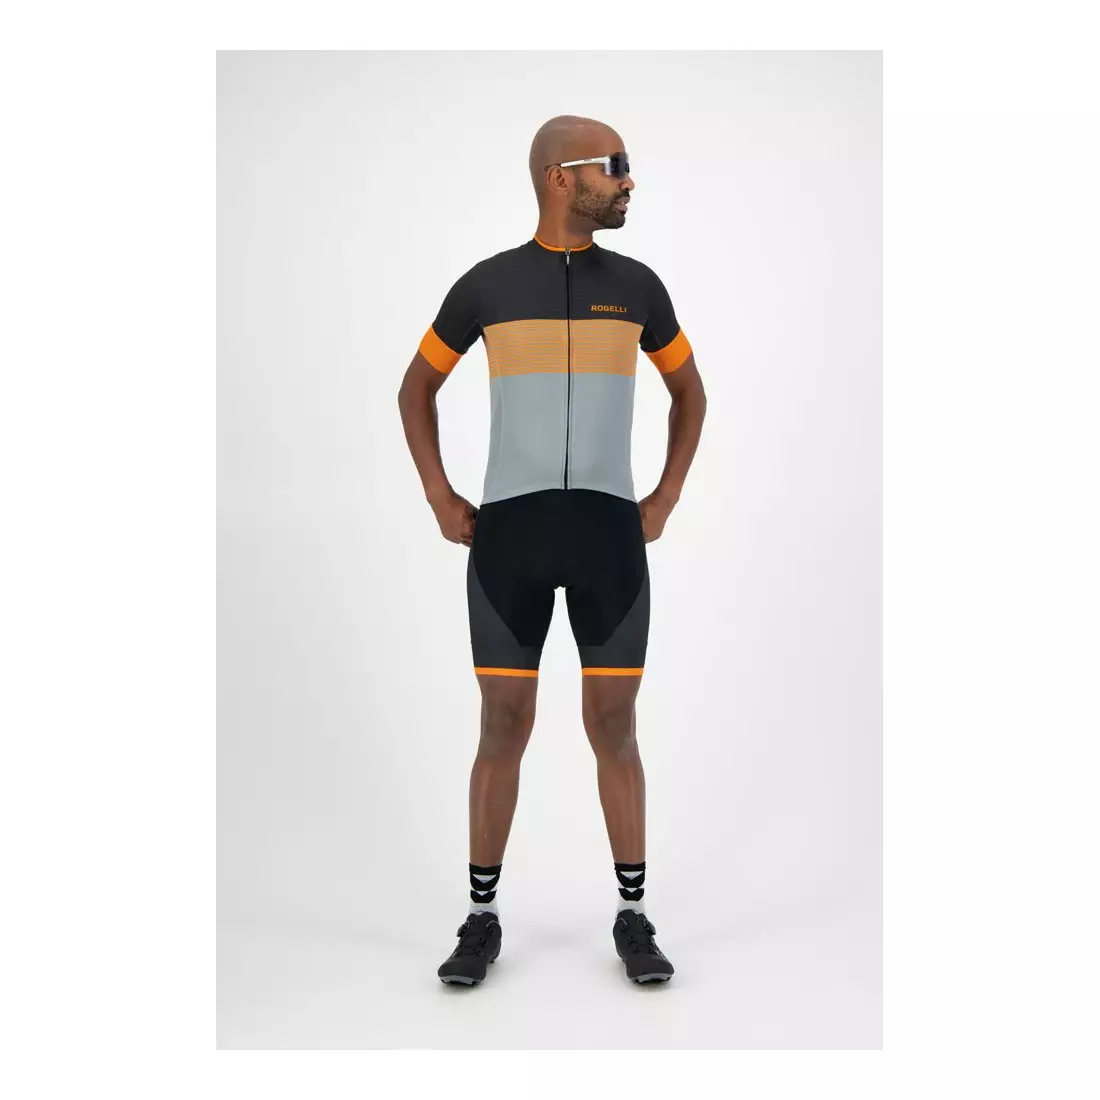 ROGELLI spodenki rowerowe męskie na szelkach FUSE black/orange